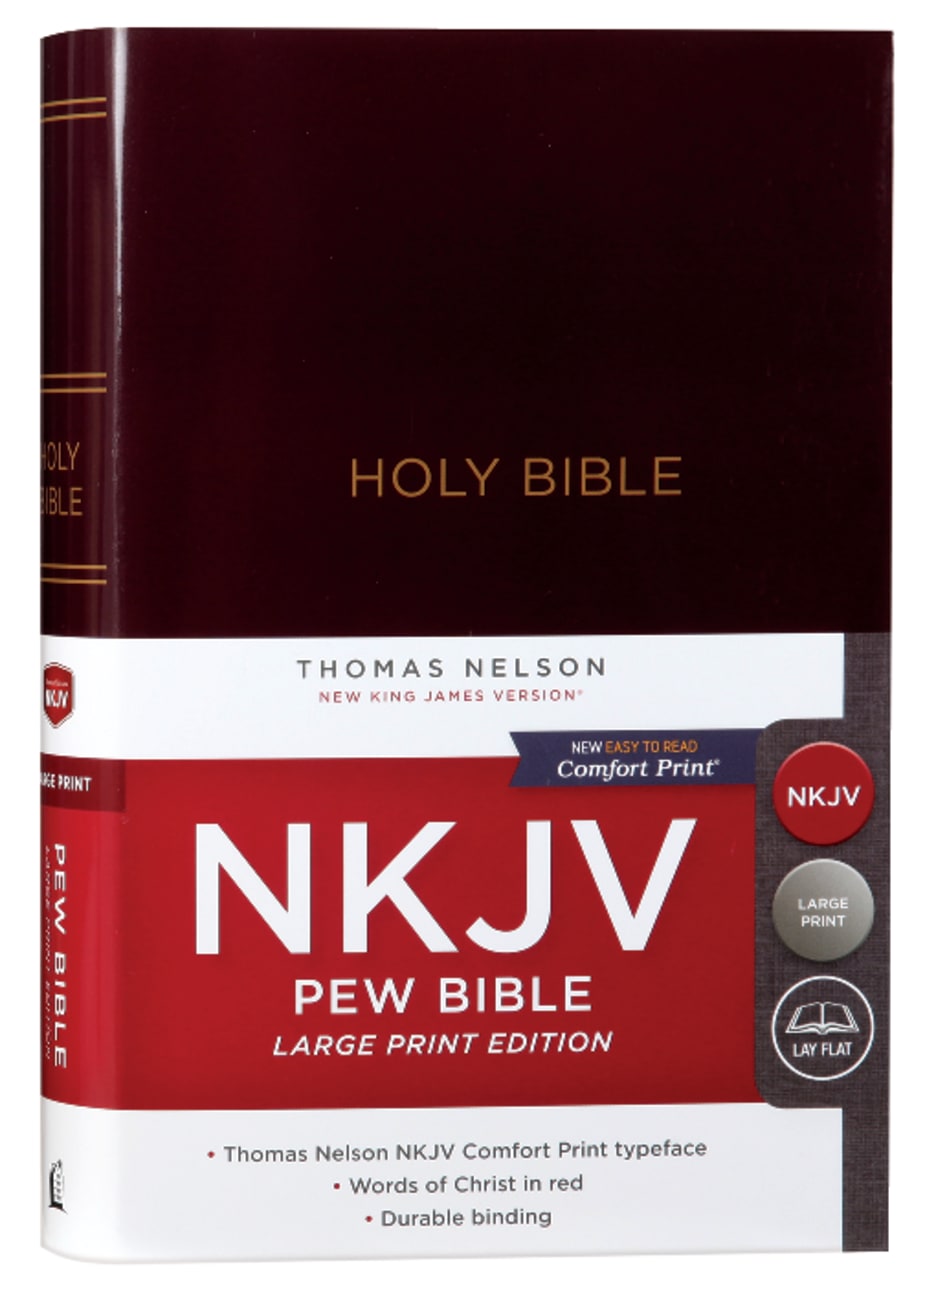 NKJV Pew Bible Large Print Burgundy (Red Letter Edition) Hardback